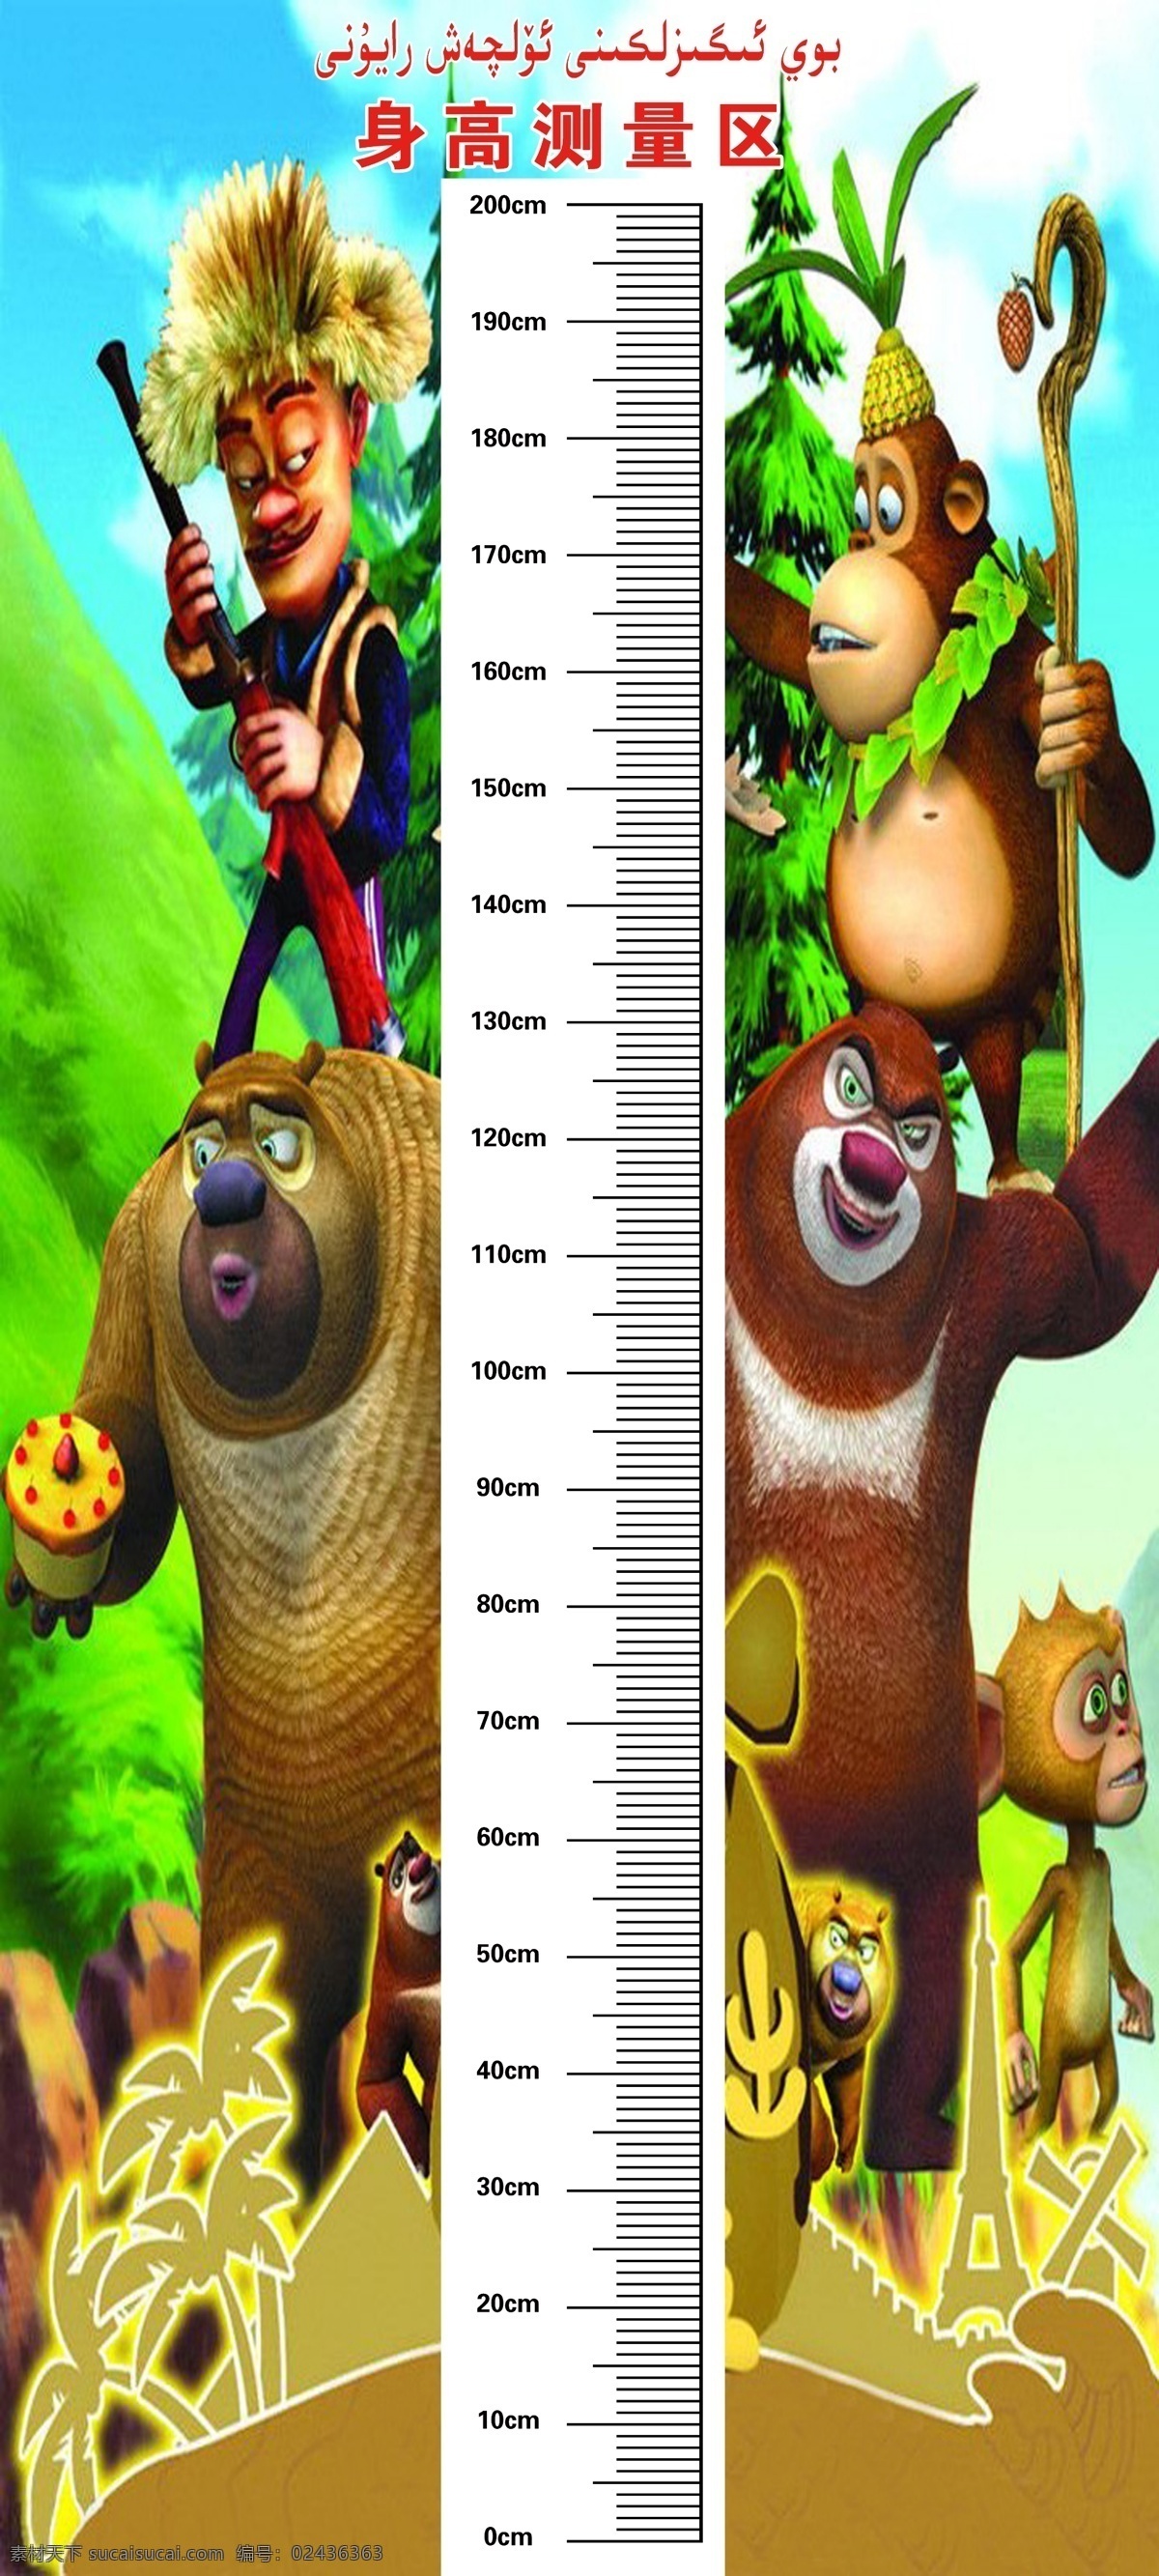 身高表 身高测量 身高测量区 测身高 测身高图 分层